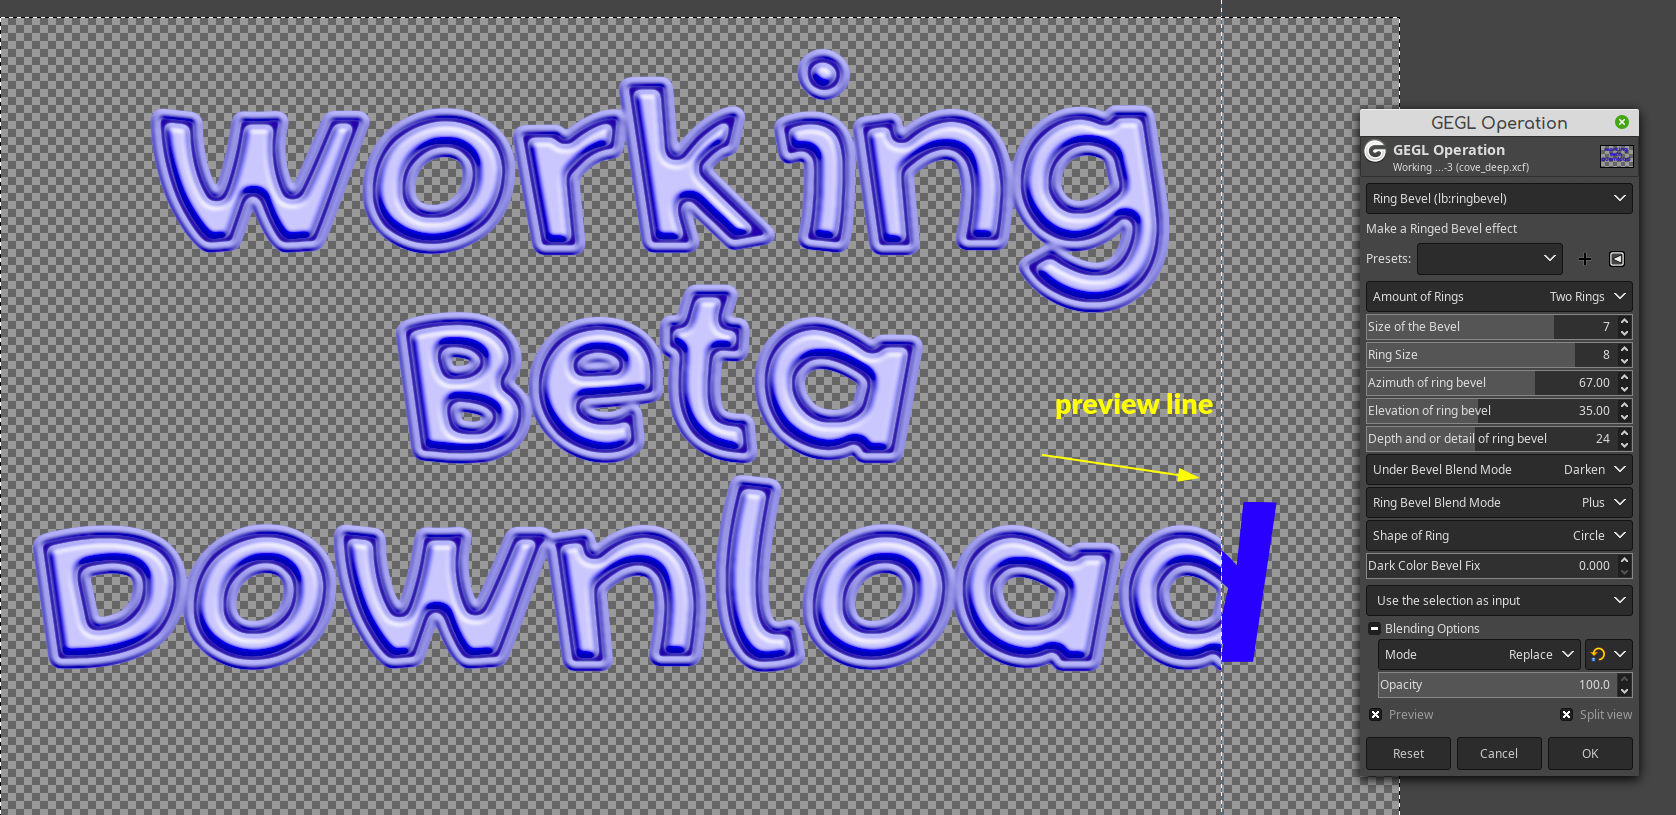 beta_download.png